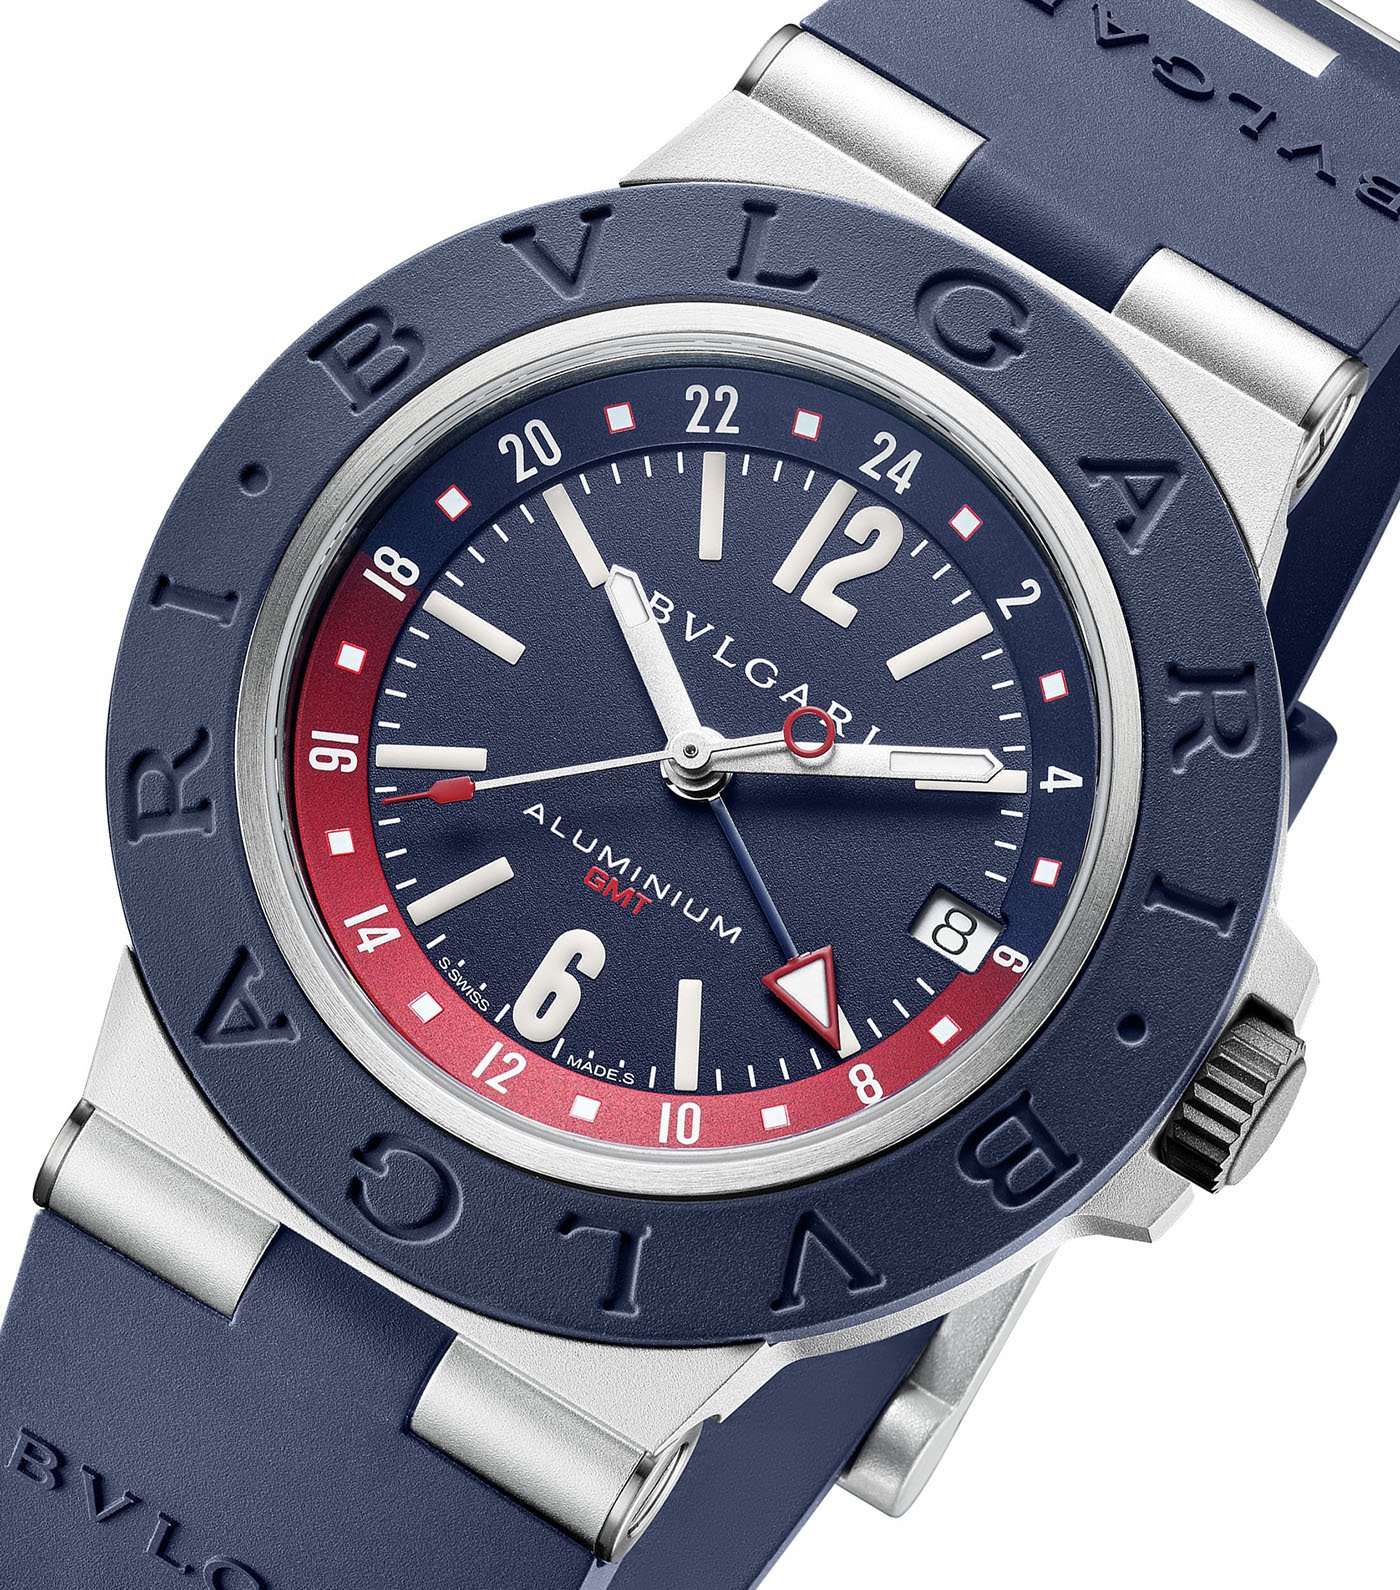 Bulgari представляет алюминиевые часы GMT